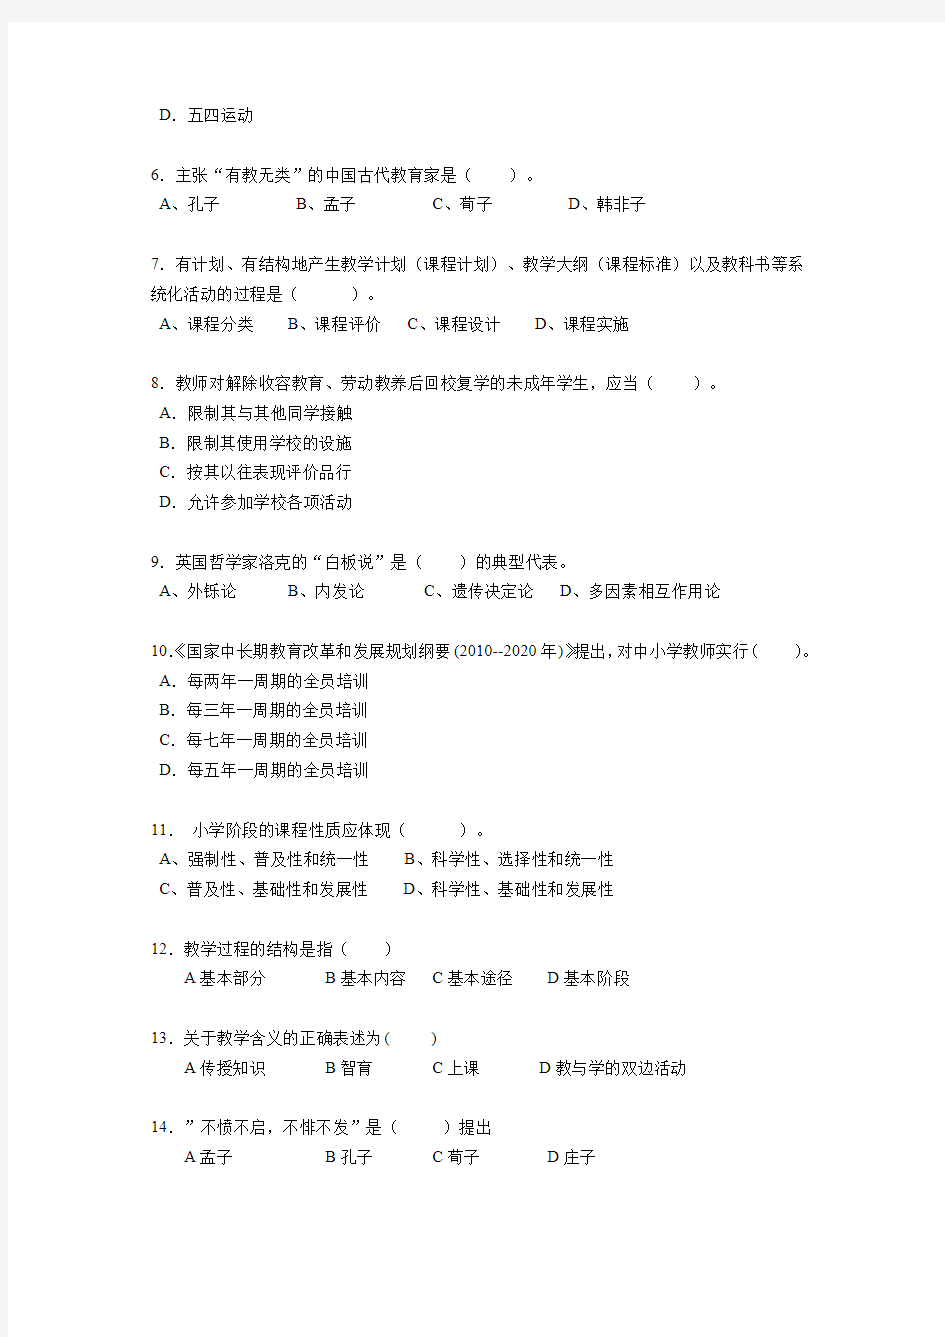 2017年江西省小学教师教师资格证考试《小学教育教学知识与能力》考试题